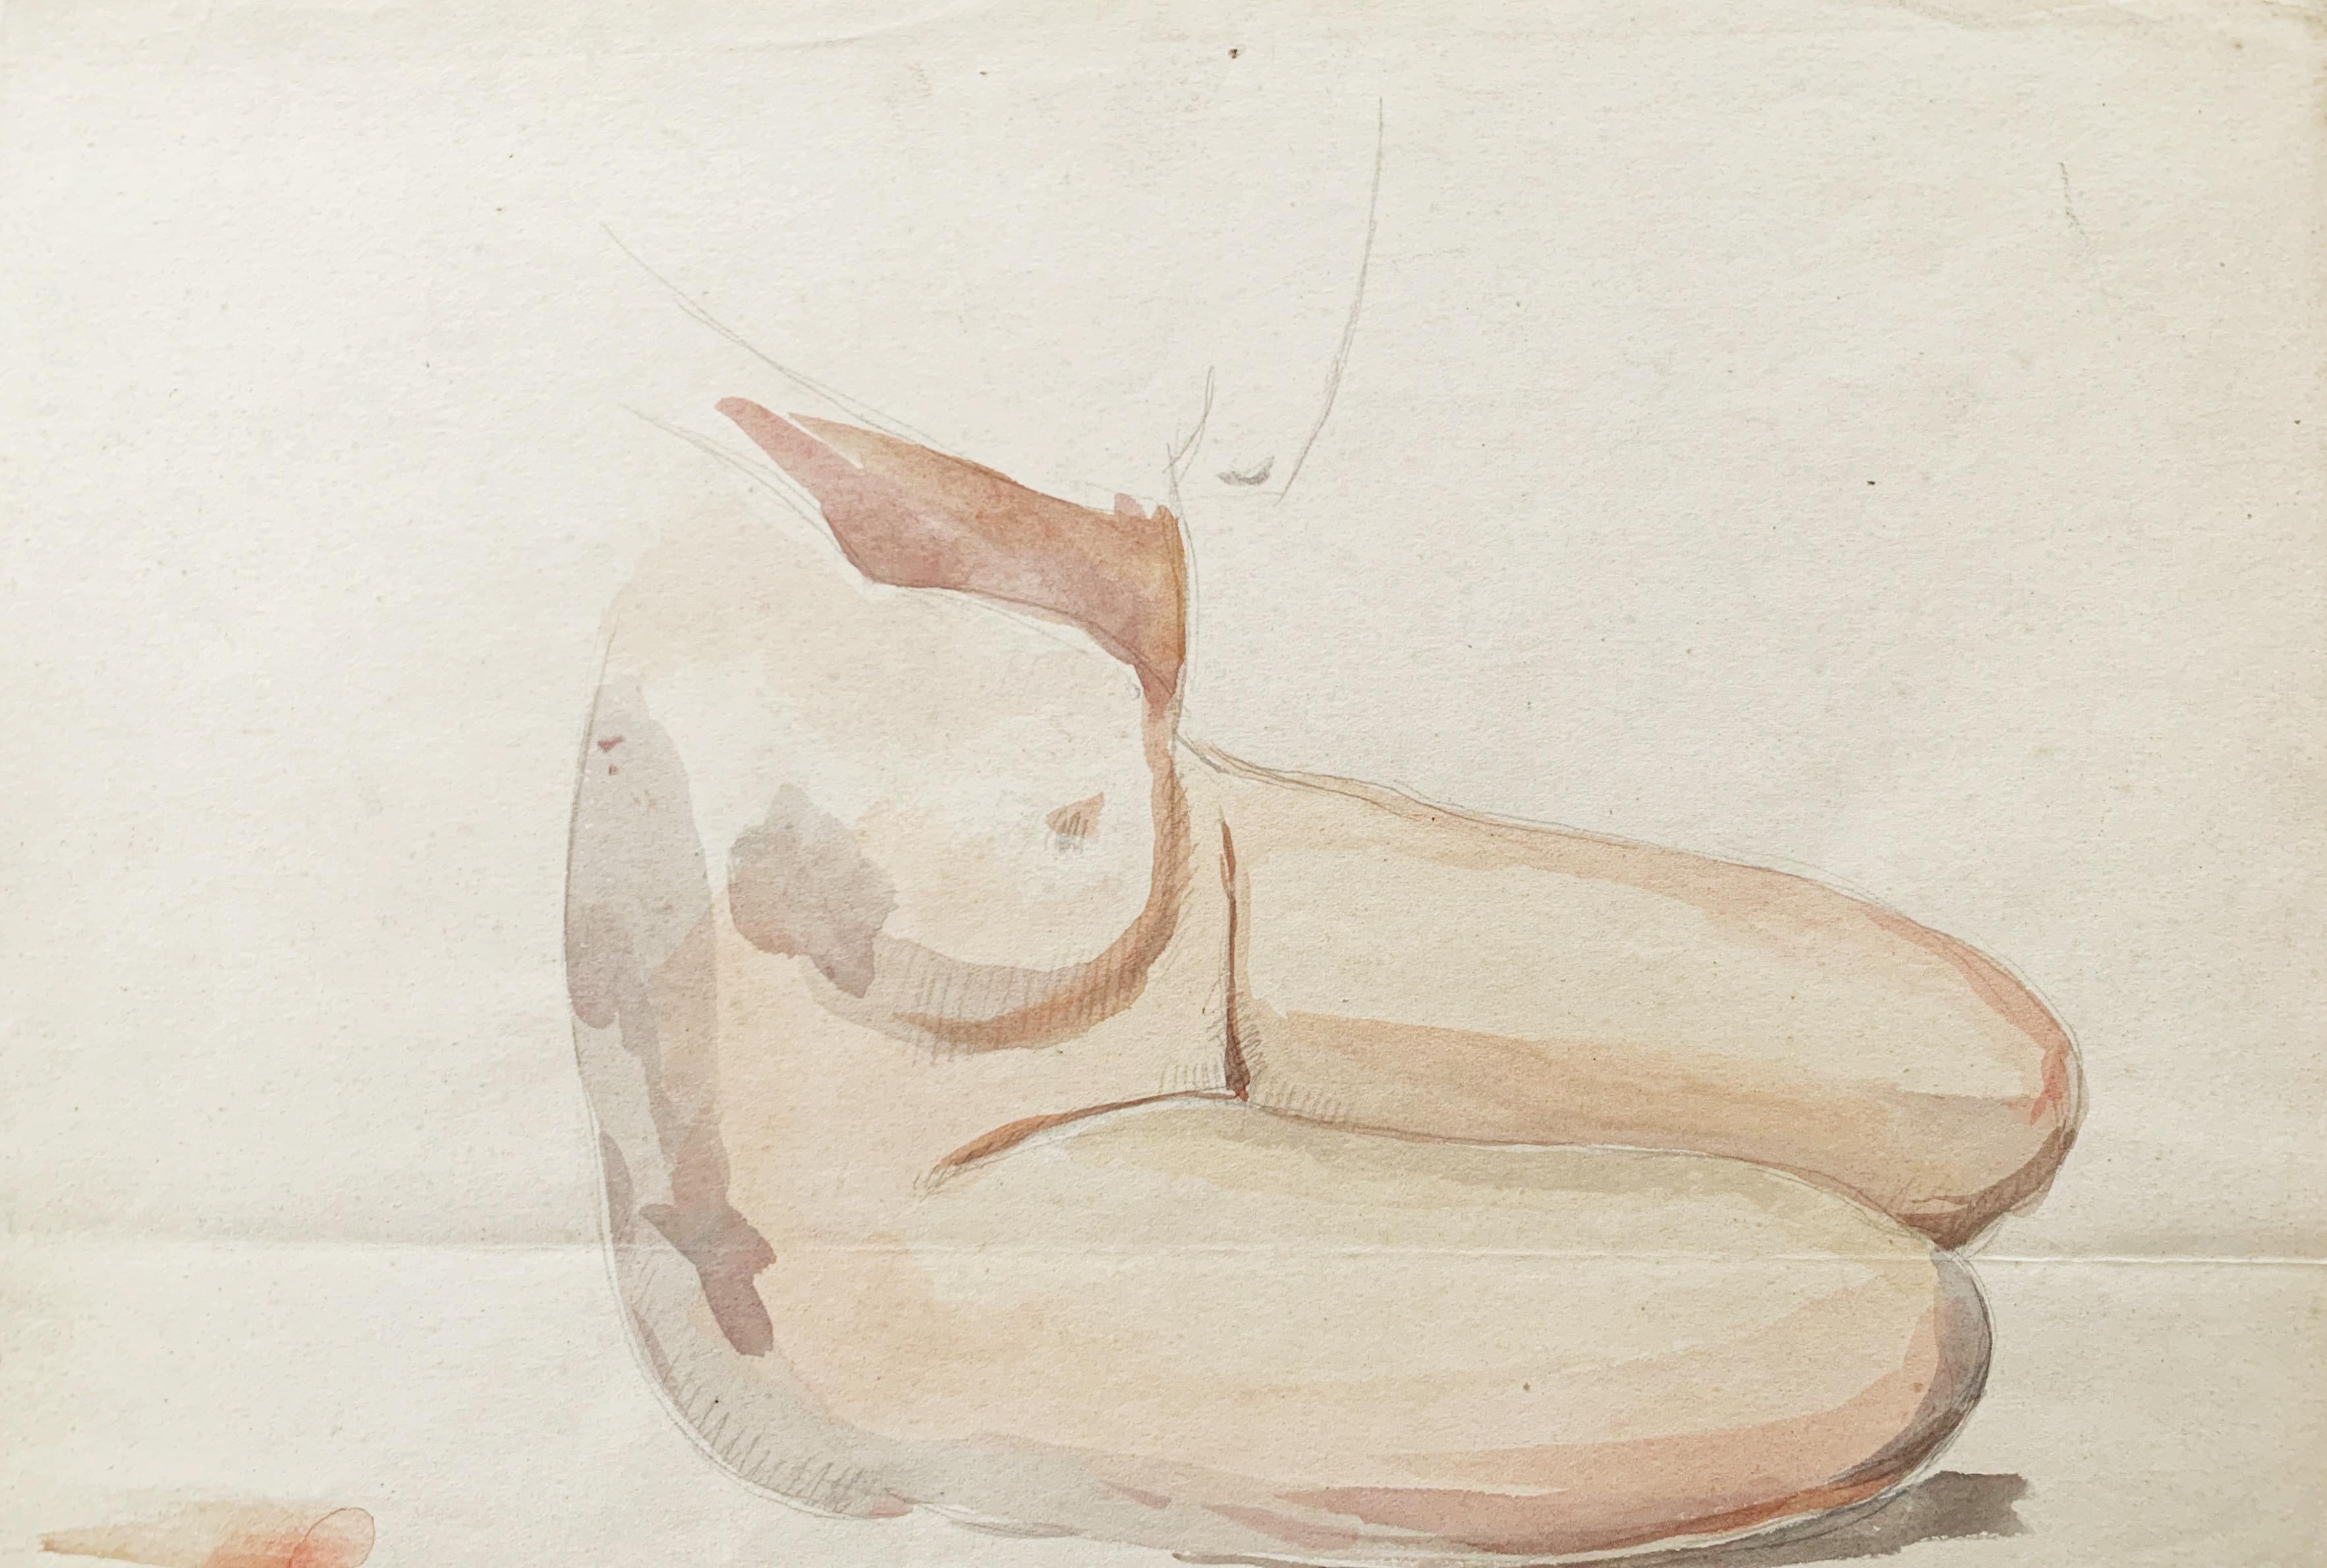 Raphaël DELORME (1886-1962)
Studie
Aquarell und Bleistift auf Papier
21 x 31 cm
Rahmen 30 x 40 cm
Spur einer Falte im Boden

Der 1885 in Bordeaux geborene Raphaël Delorme gehört zu den wichtigsten Vertretern der sogenannten "Art Deco"-Malerei. Seine